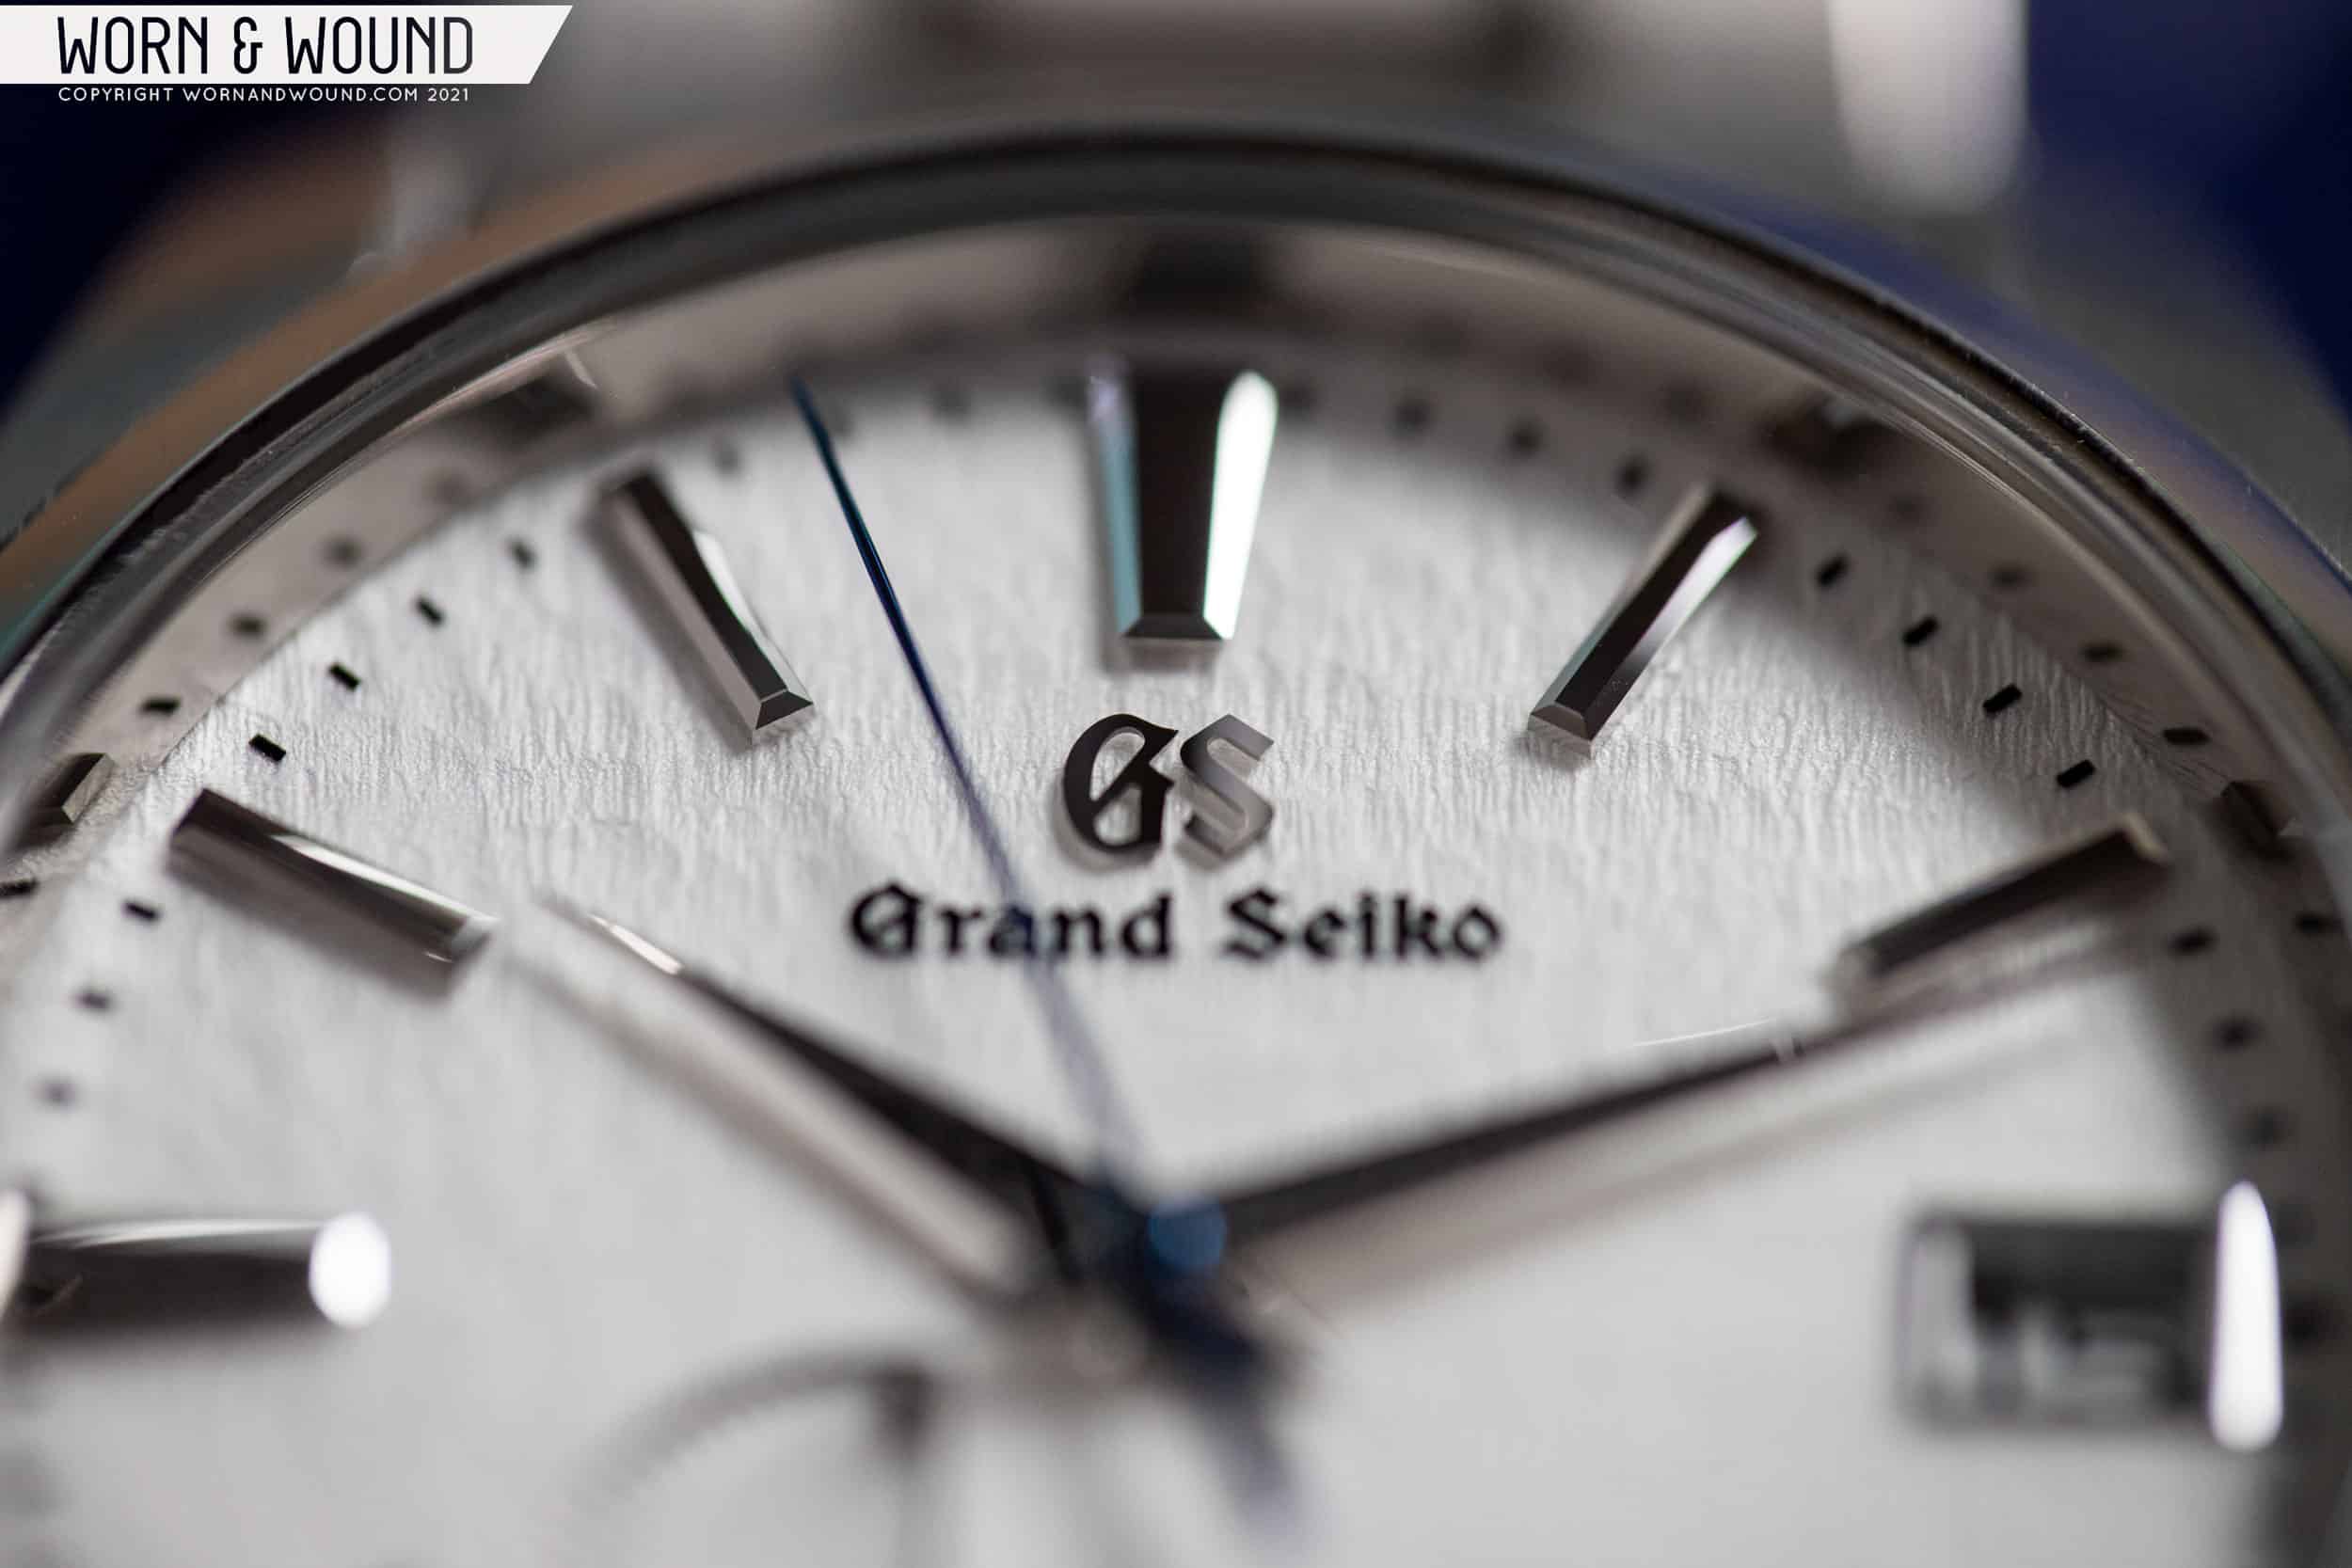 Review: the Grand Seiko SBGA211 